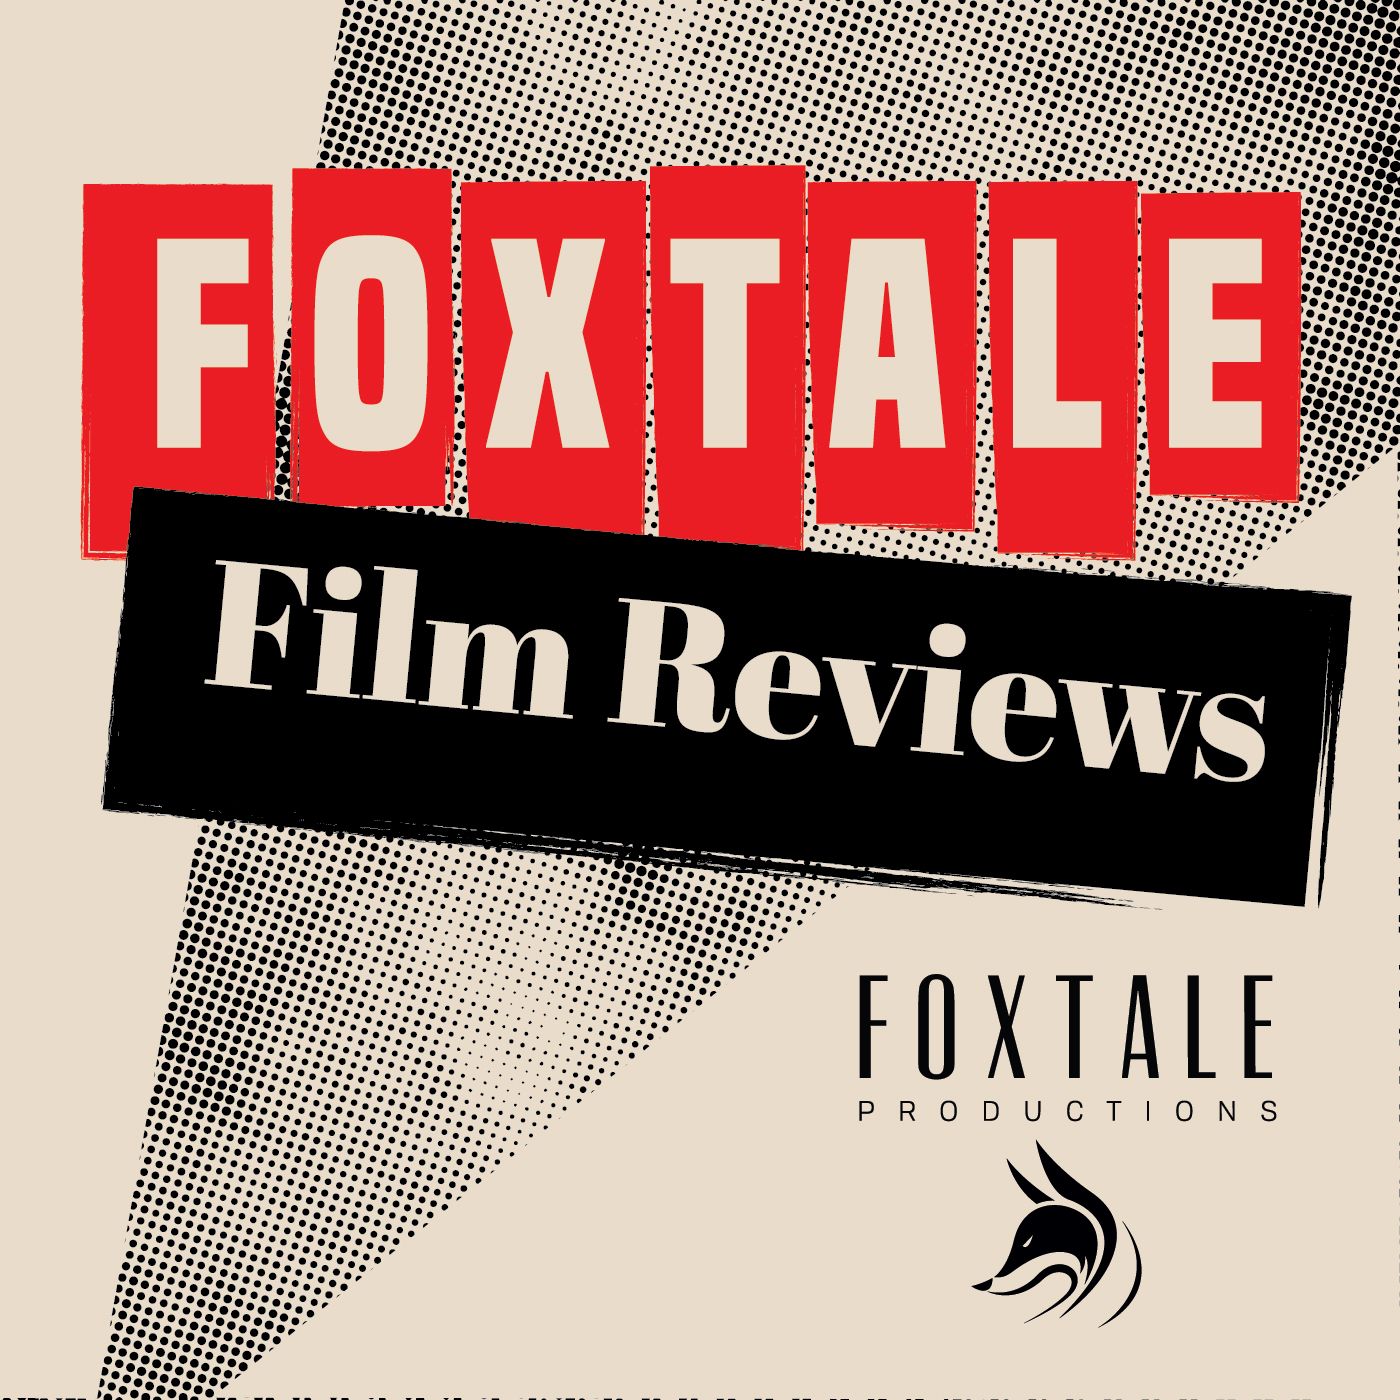 Foxtale Film Reviews